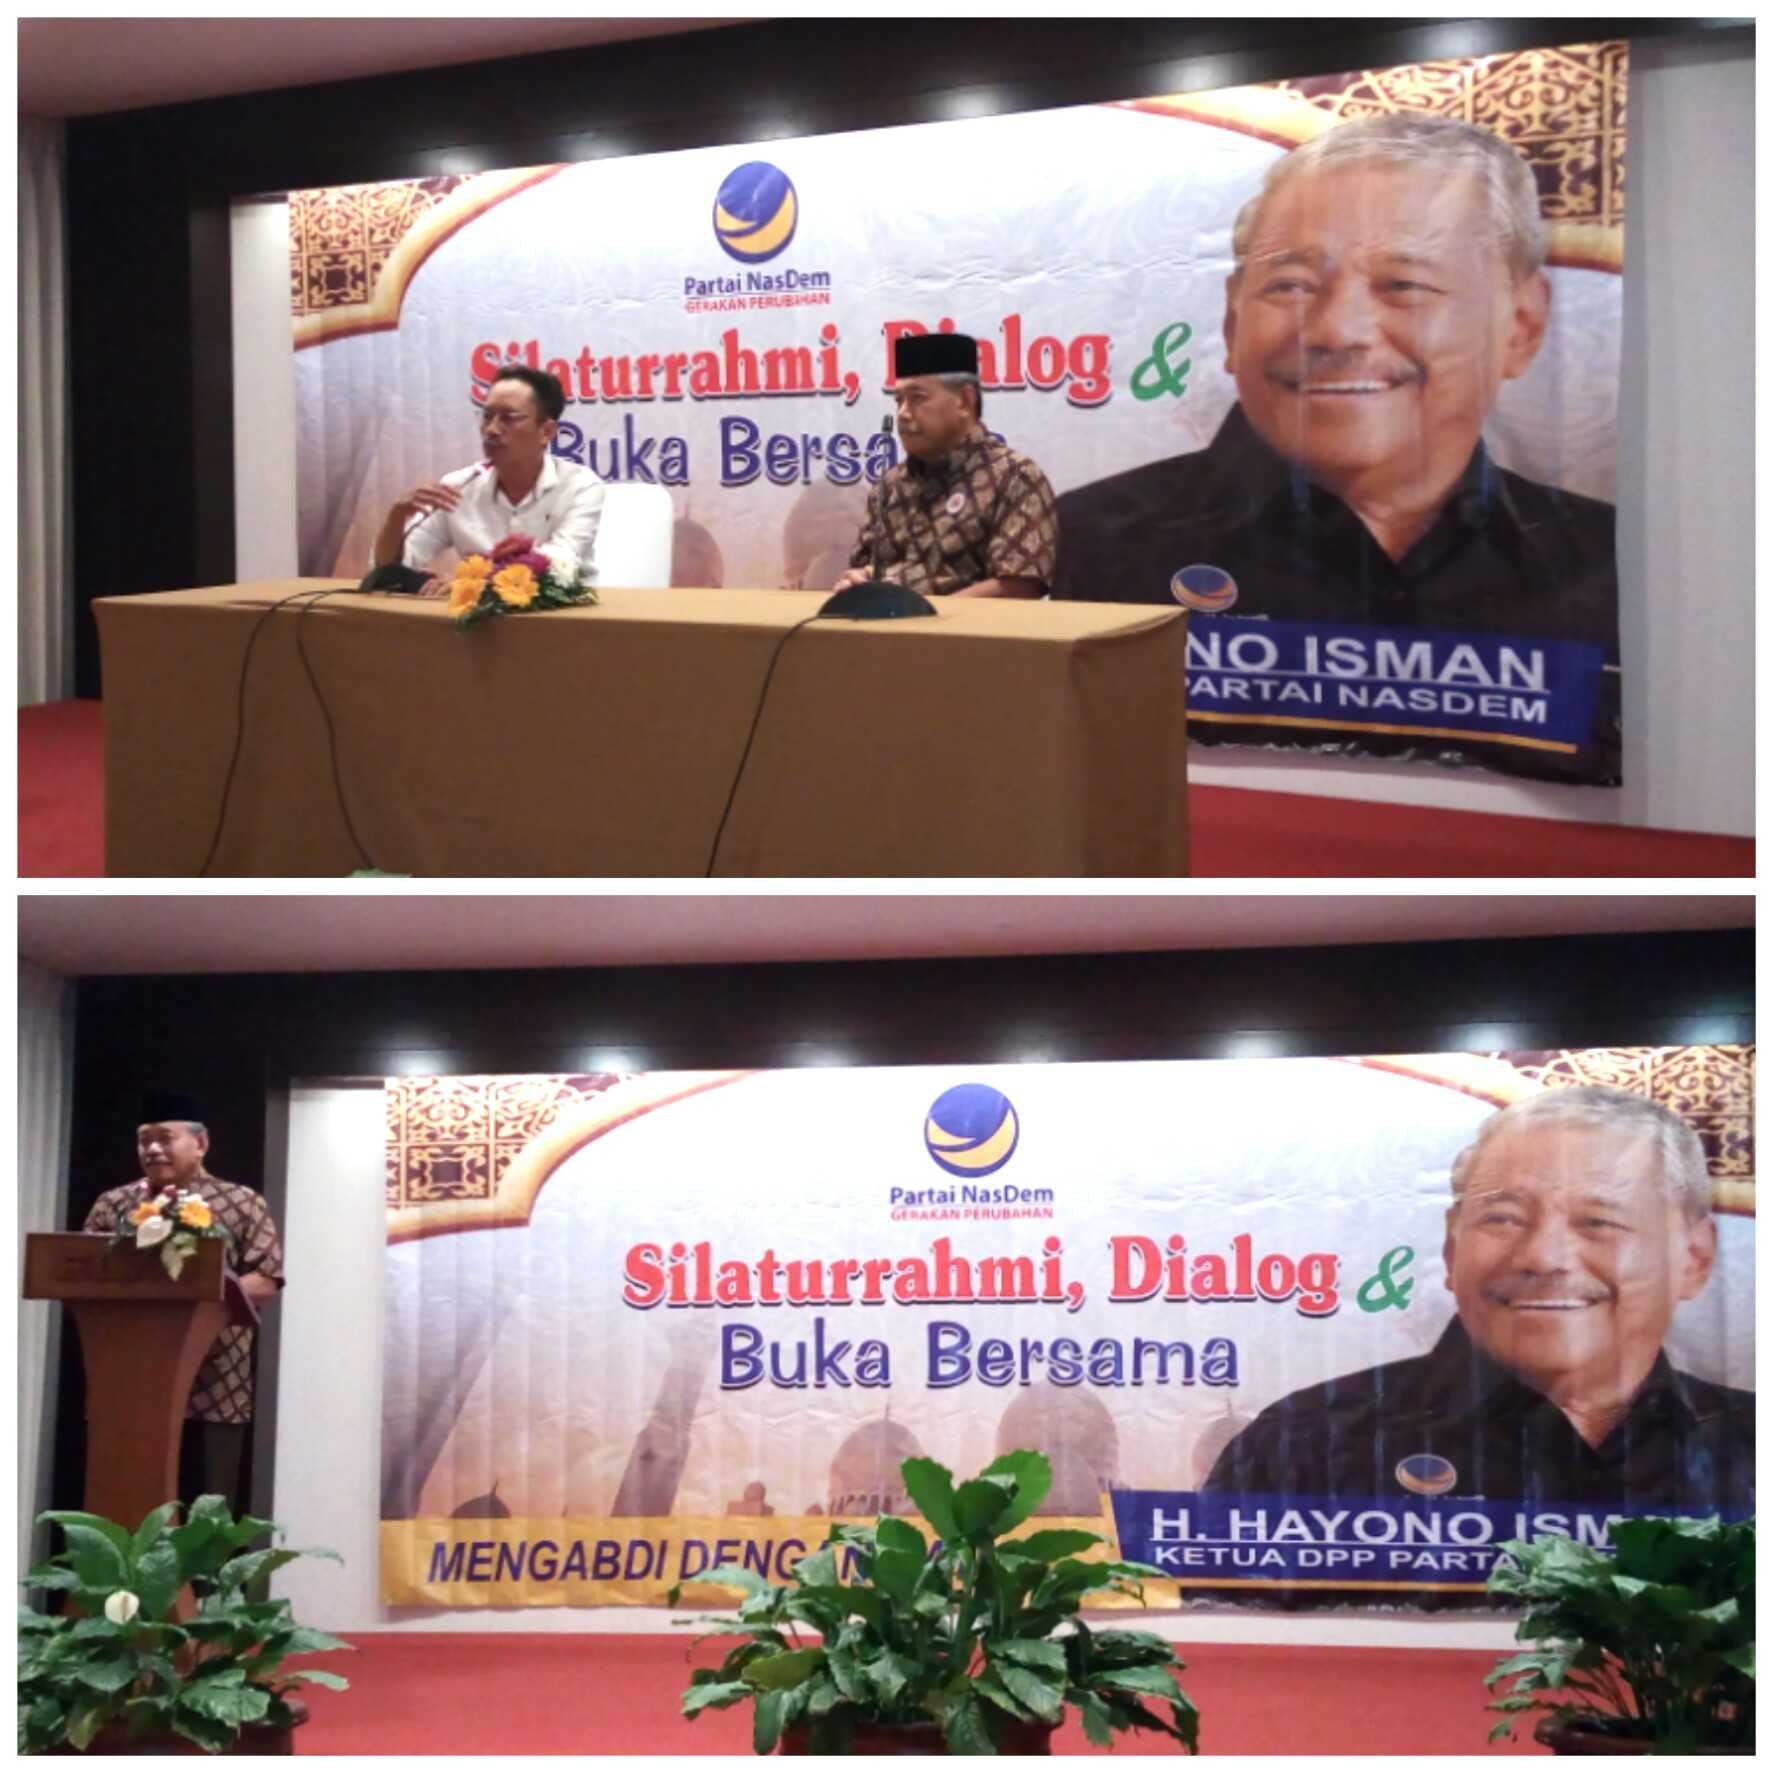 Perkuat Silaturrahmi Antar Kader, Ketua DPP NasDem Hayono Isman Gelar Dialog Dan Buka Bersama